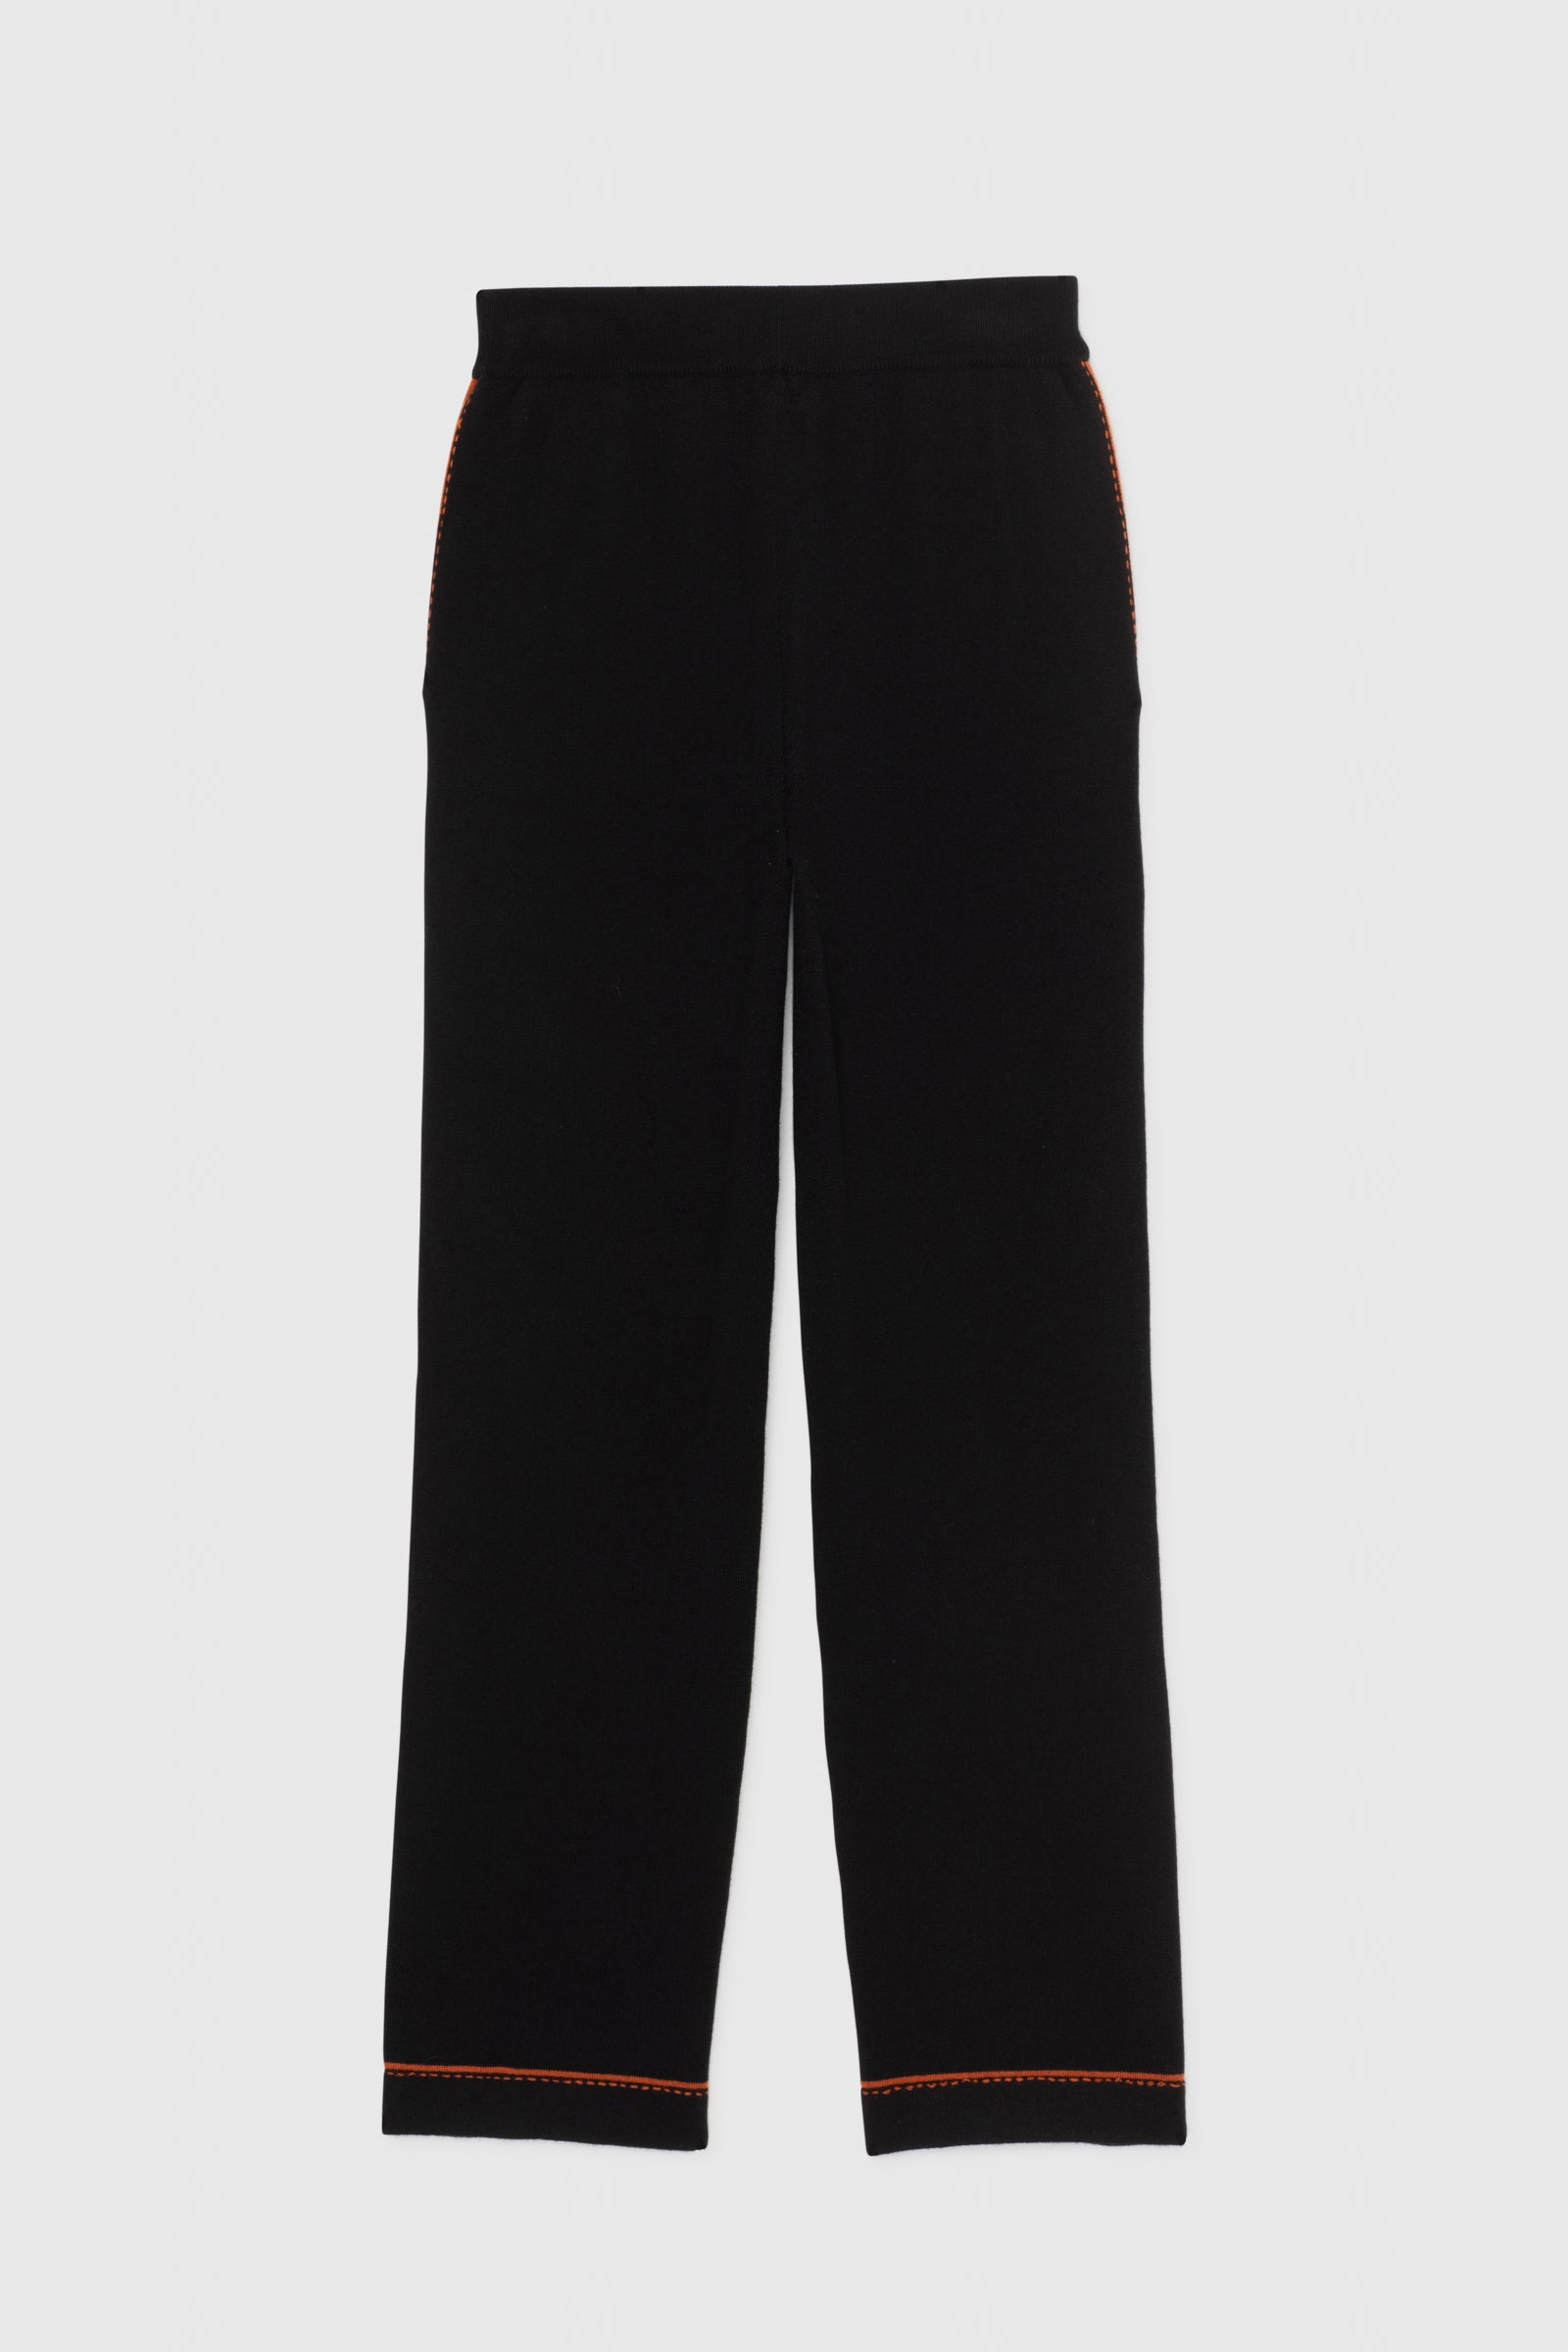 Pantalon JOEL noir & terracotta Laine Cachemire haut de gamme femme MAX&MOI